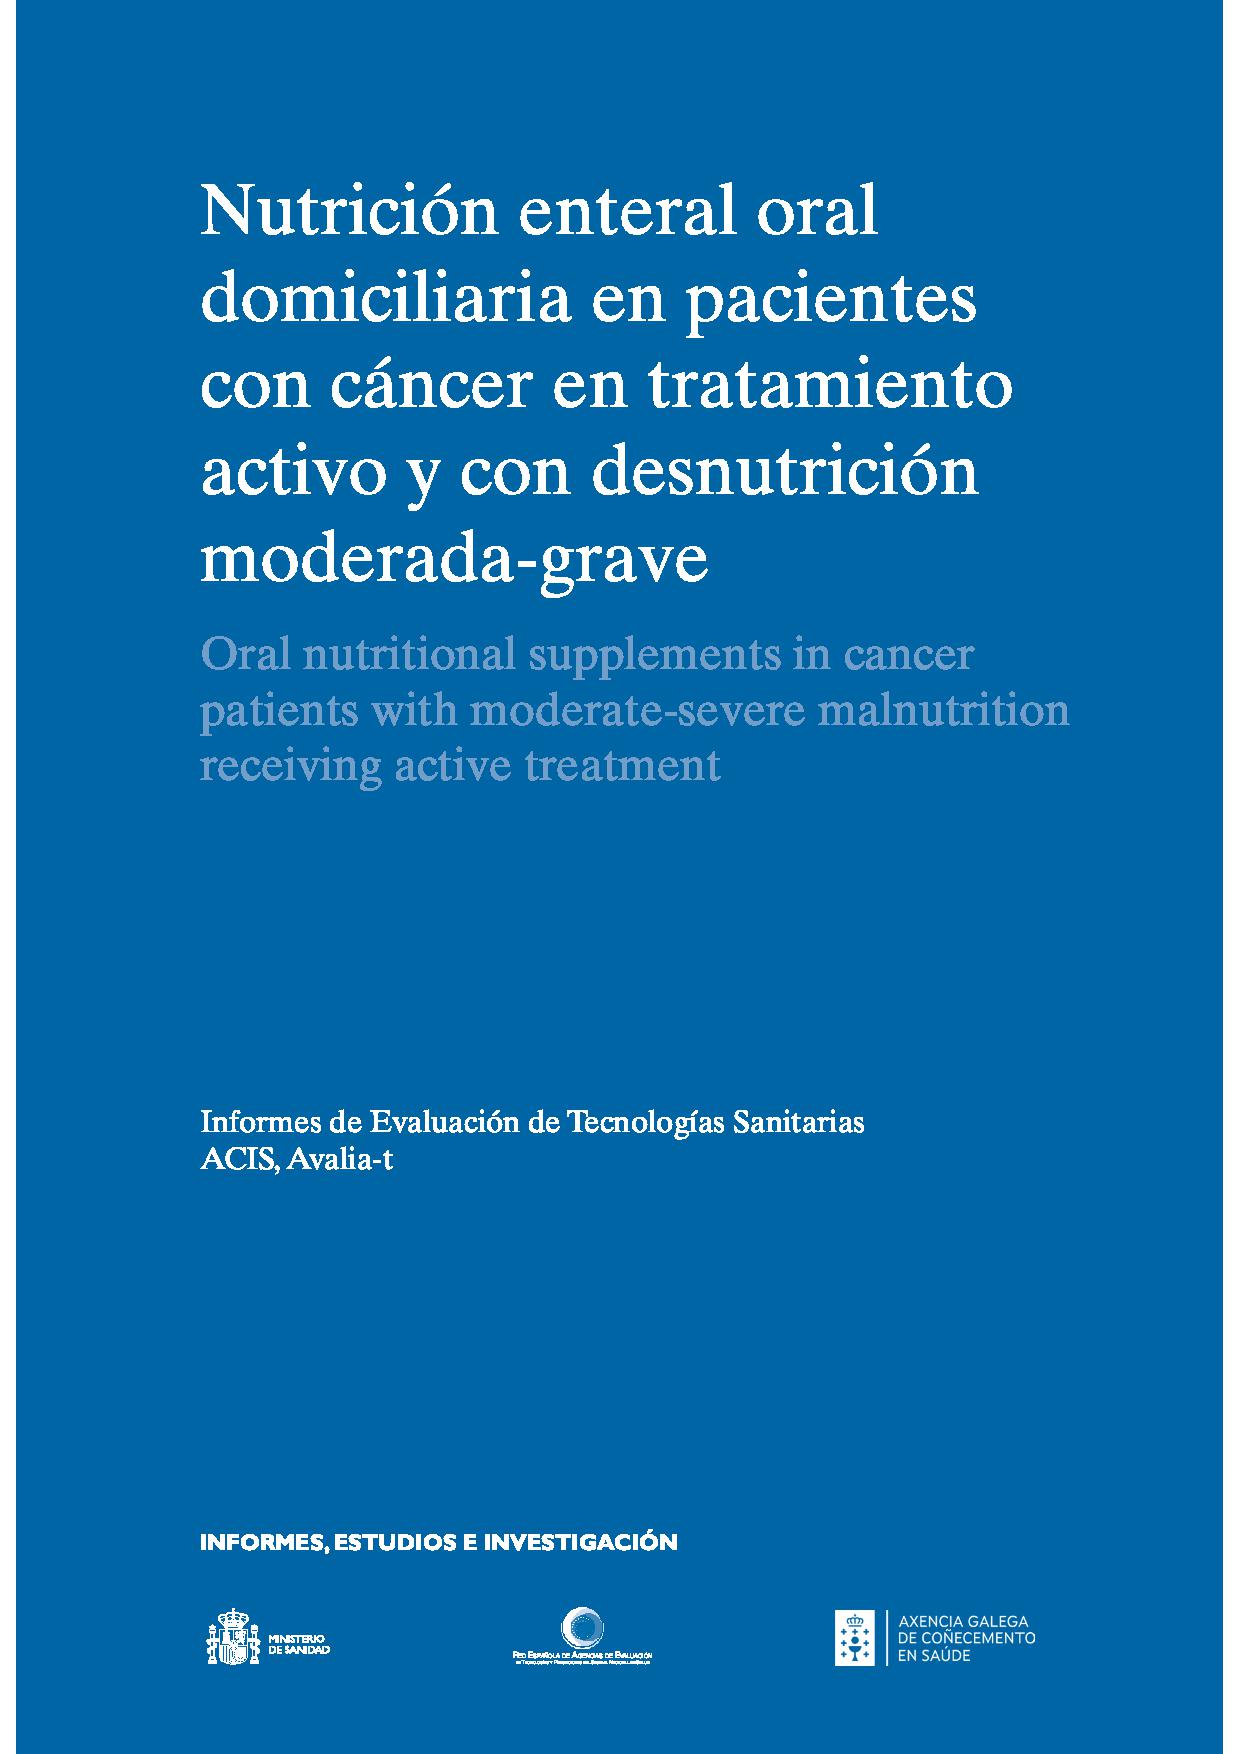 Imagen de portada del libro Nutrición enteral domiciliaria oral en pacientes con cáncer en tratamiento activo y con desnutrición moderada-grave